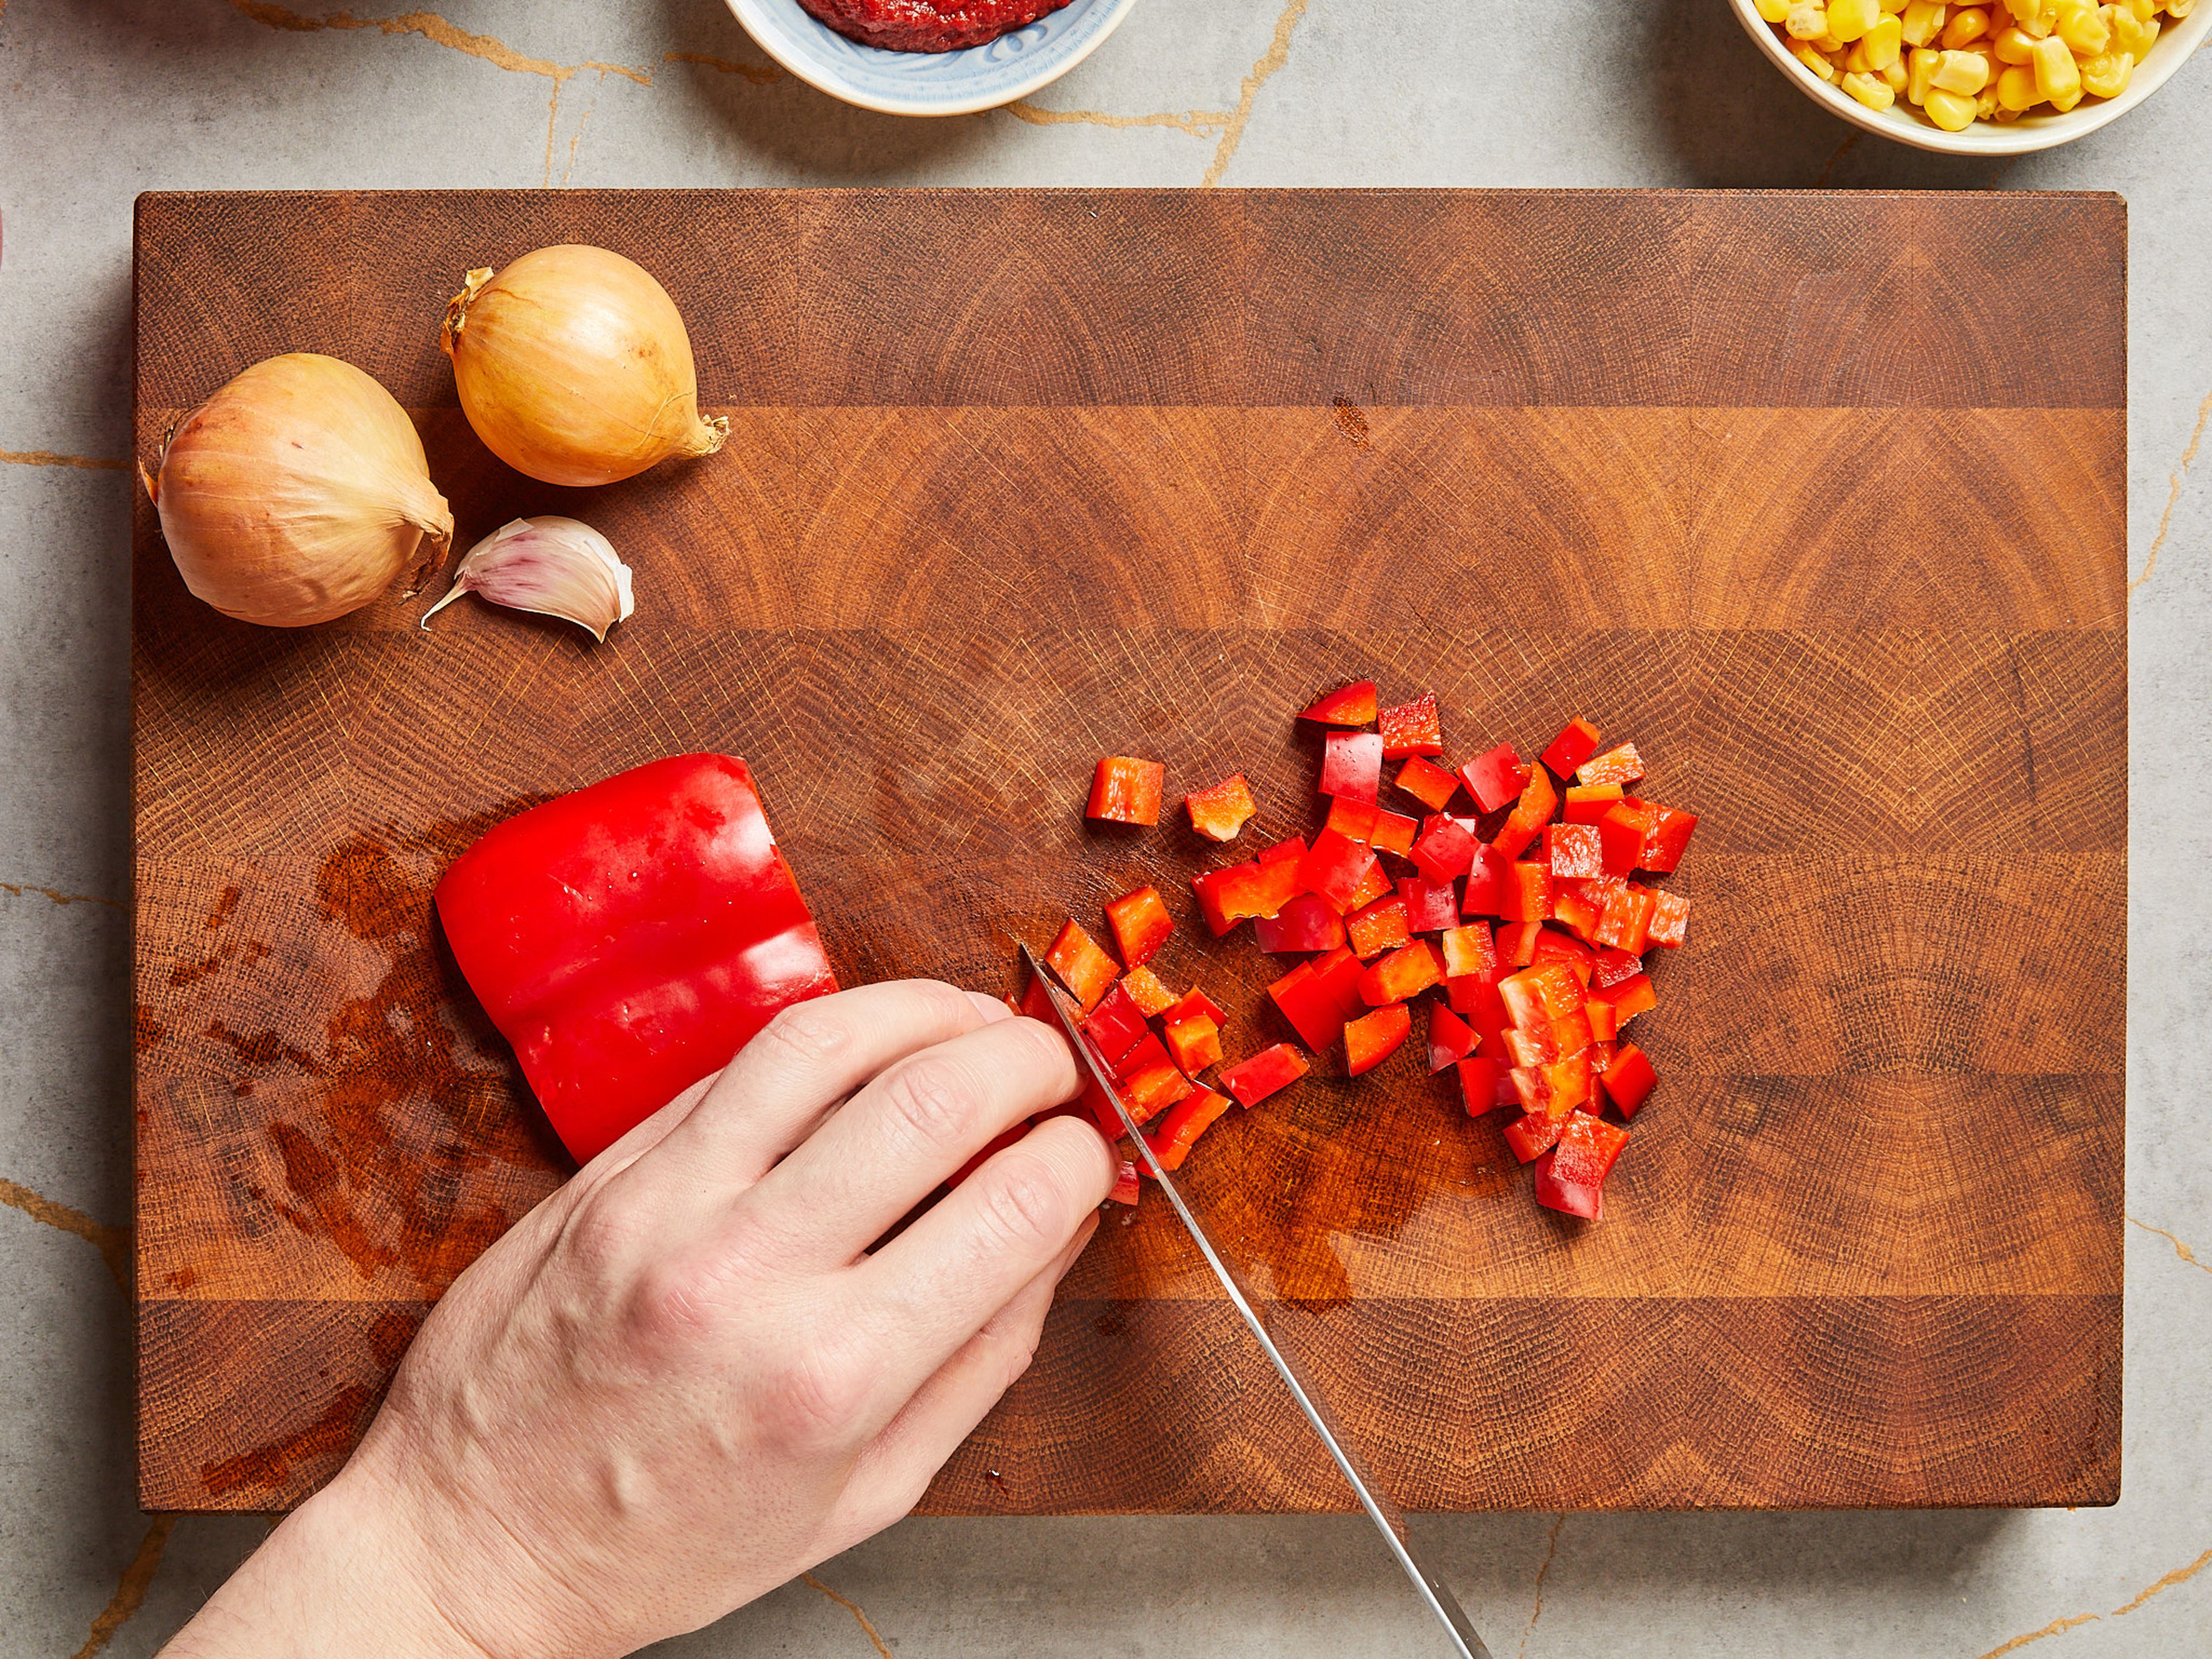 Zwiebel und Knoblauch schälen und fein hacken. Die rote Paprika in Würfel schneiden. Chilischote halbieren, entkernen und fein hacken.